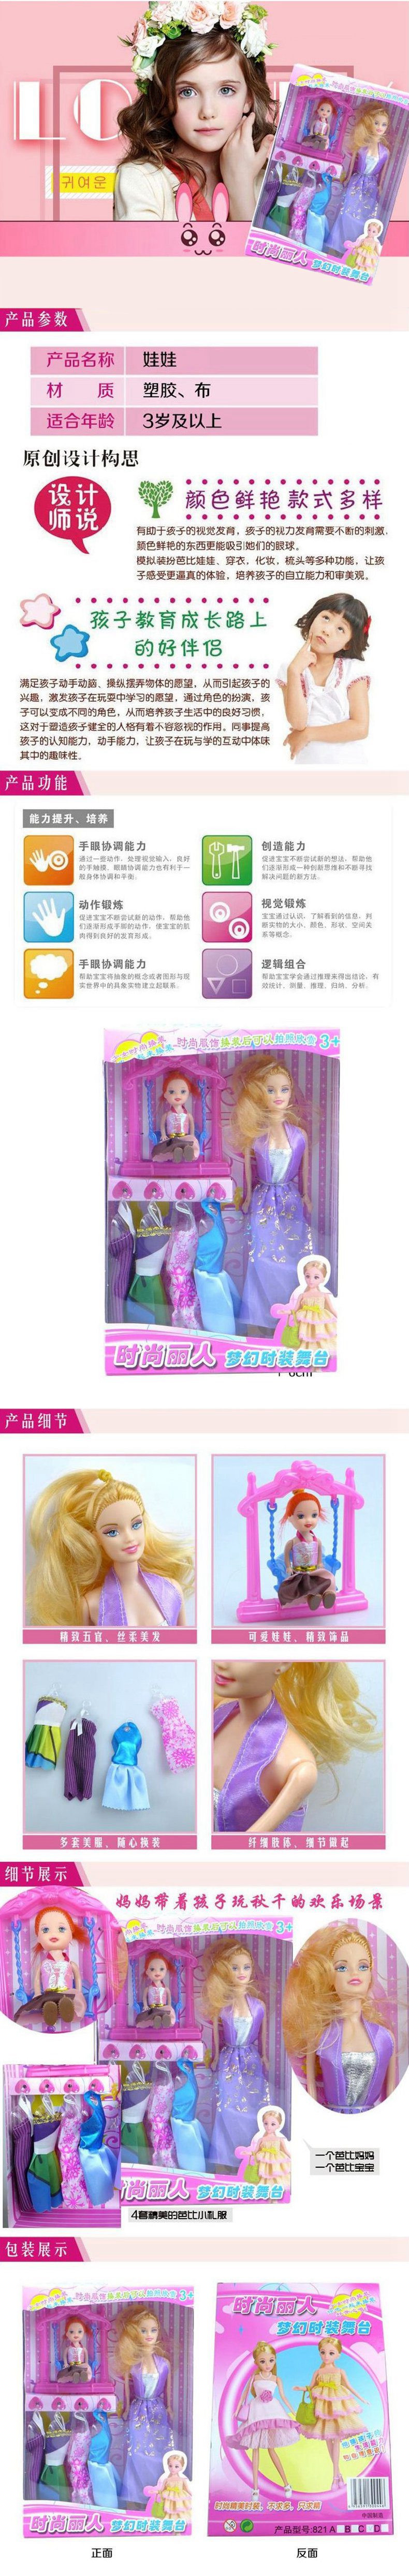 诚辉玩具时尚丽人梦幻时装舞台女孩换装游戏玩具芭比娃娃玩具女孩儿生日礼物821